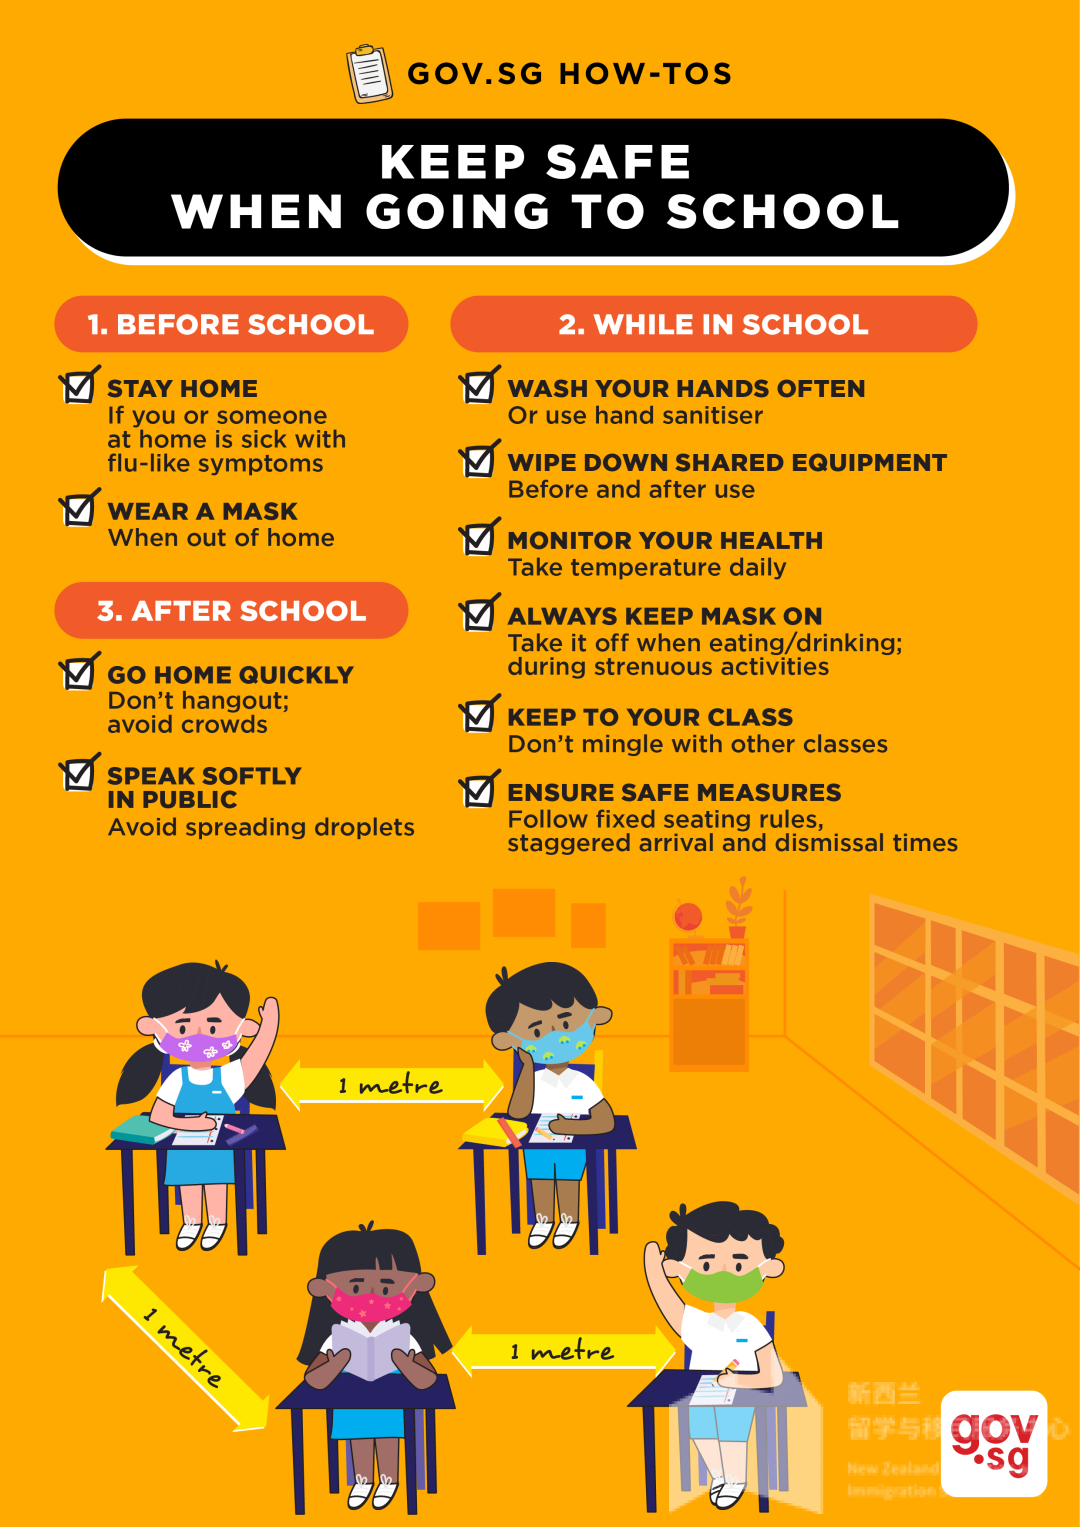 新加坡政府推出返校政策：仅持有效学生准证的毕业班学生可以返校参加实体课程